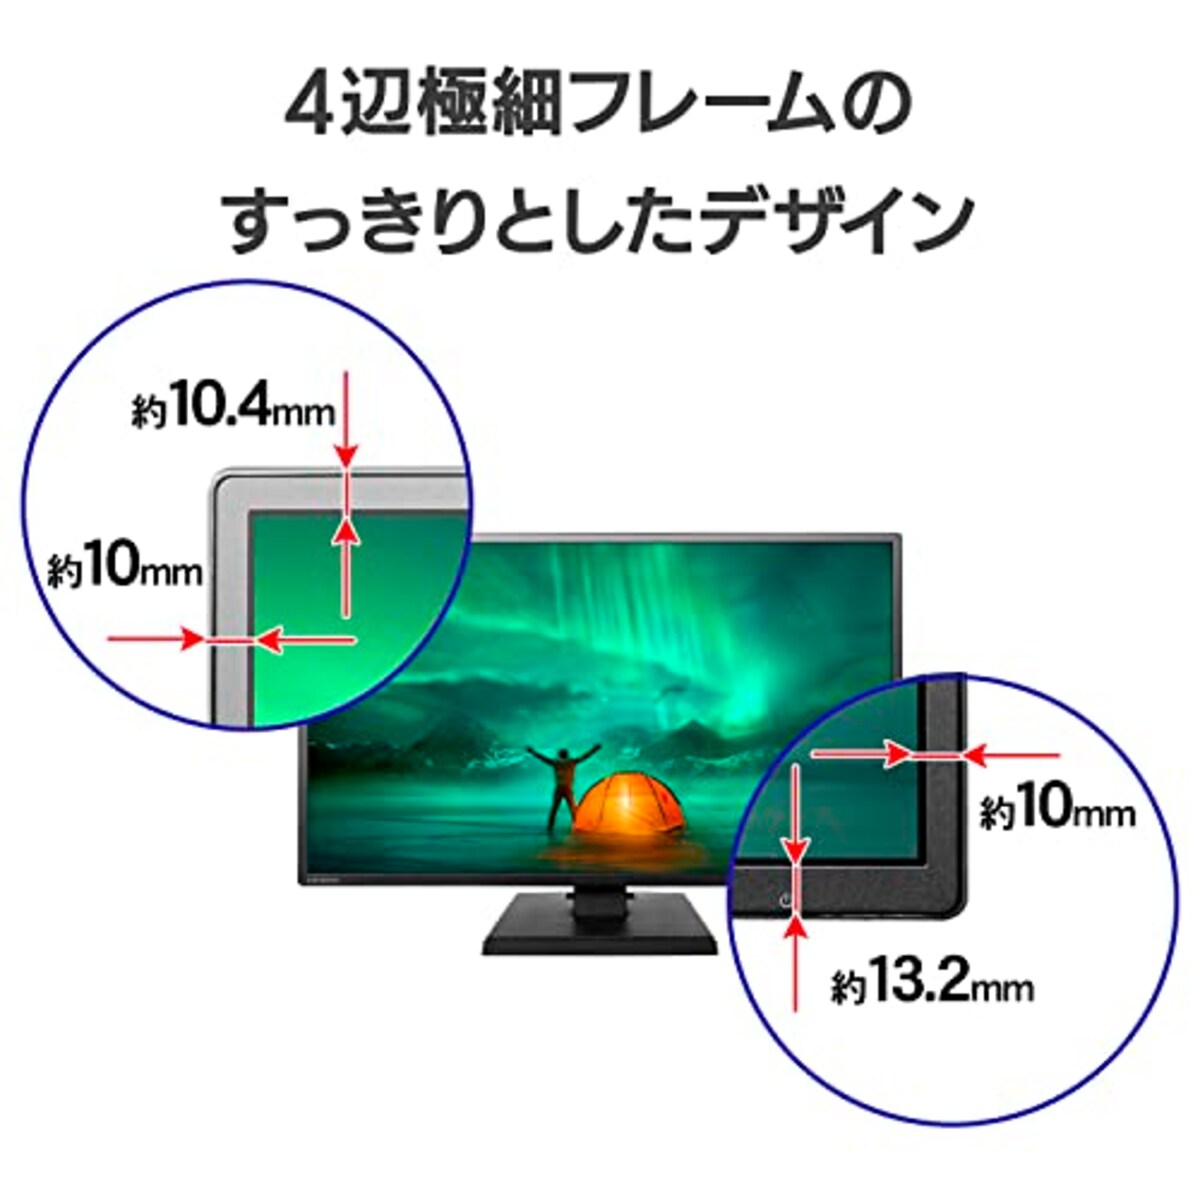  【Amazon.co.jp 限定】 アイ・オー・データ IODATA モニター 27インチ FHD 1080p ADSパネル 広視野角 5ms (HDMI/アナログRGB/スピーカー付/VESA対応/土日サポート) EX-LDH271DB-B画像2 